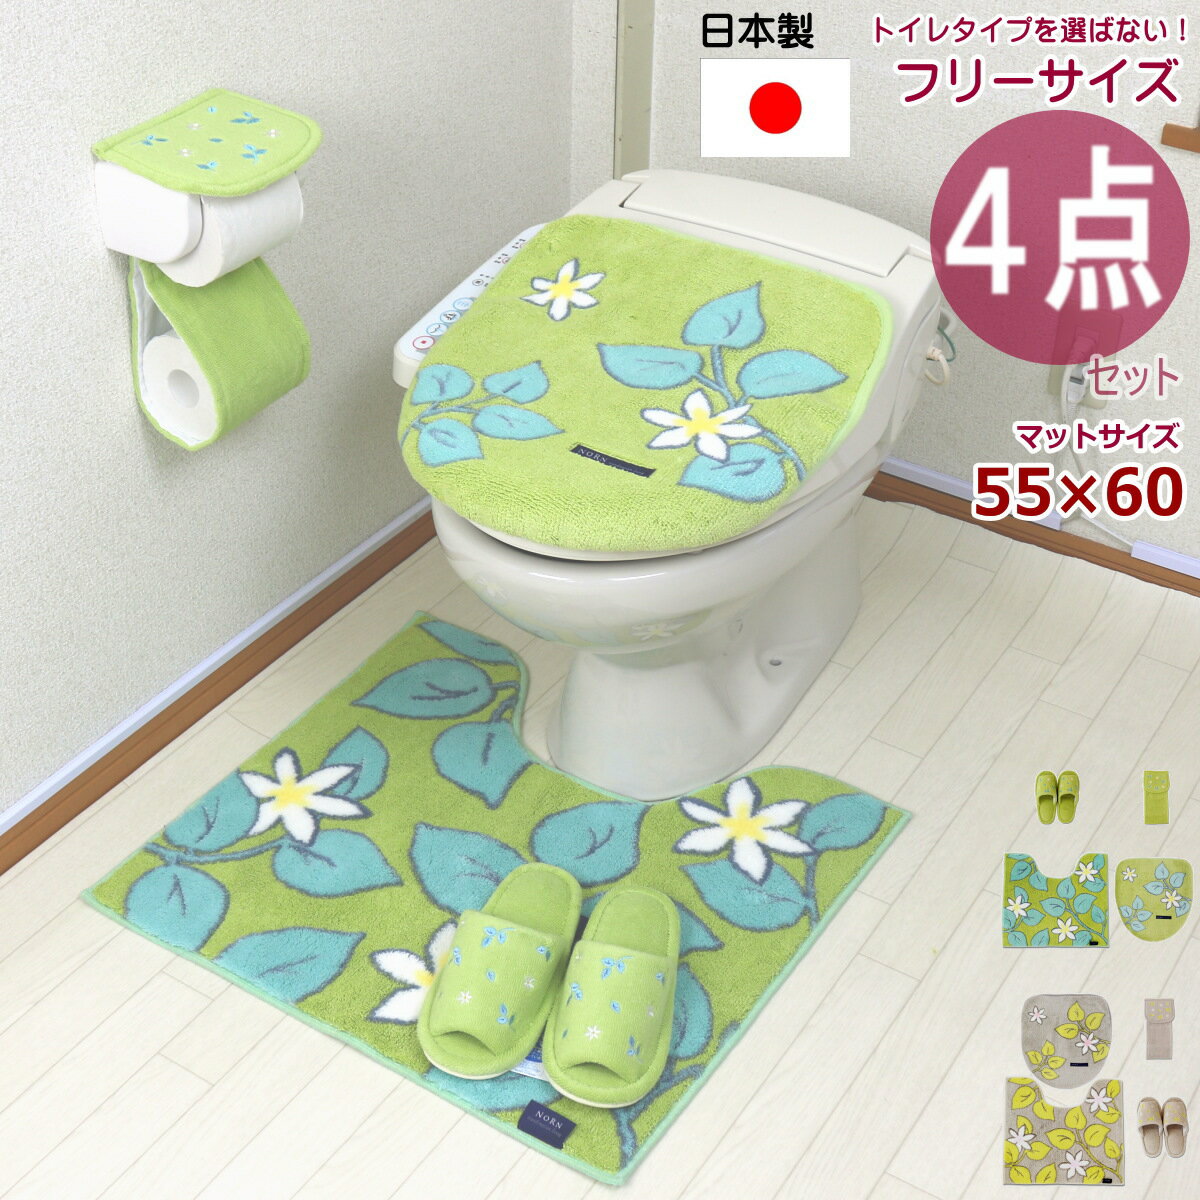 トイレマット 4点 セット 日本製 オカ ノルン...の商品画像